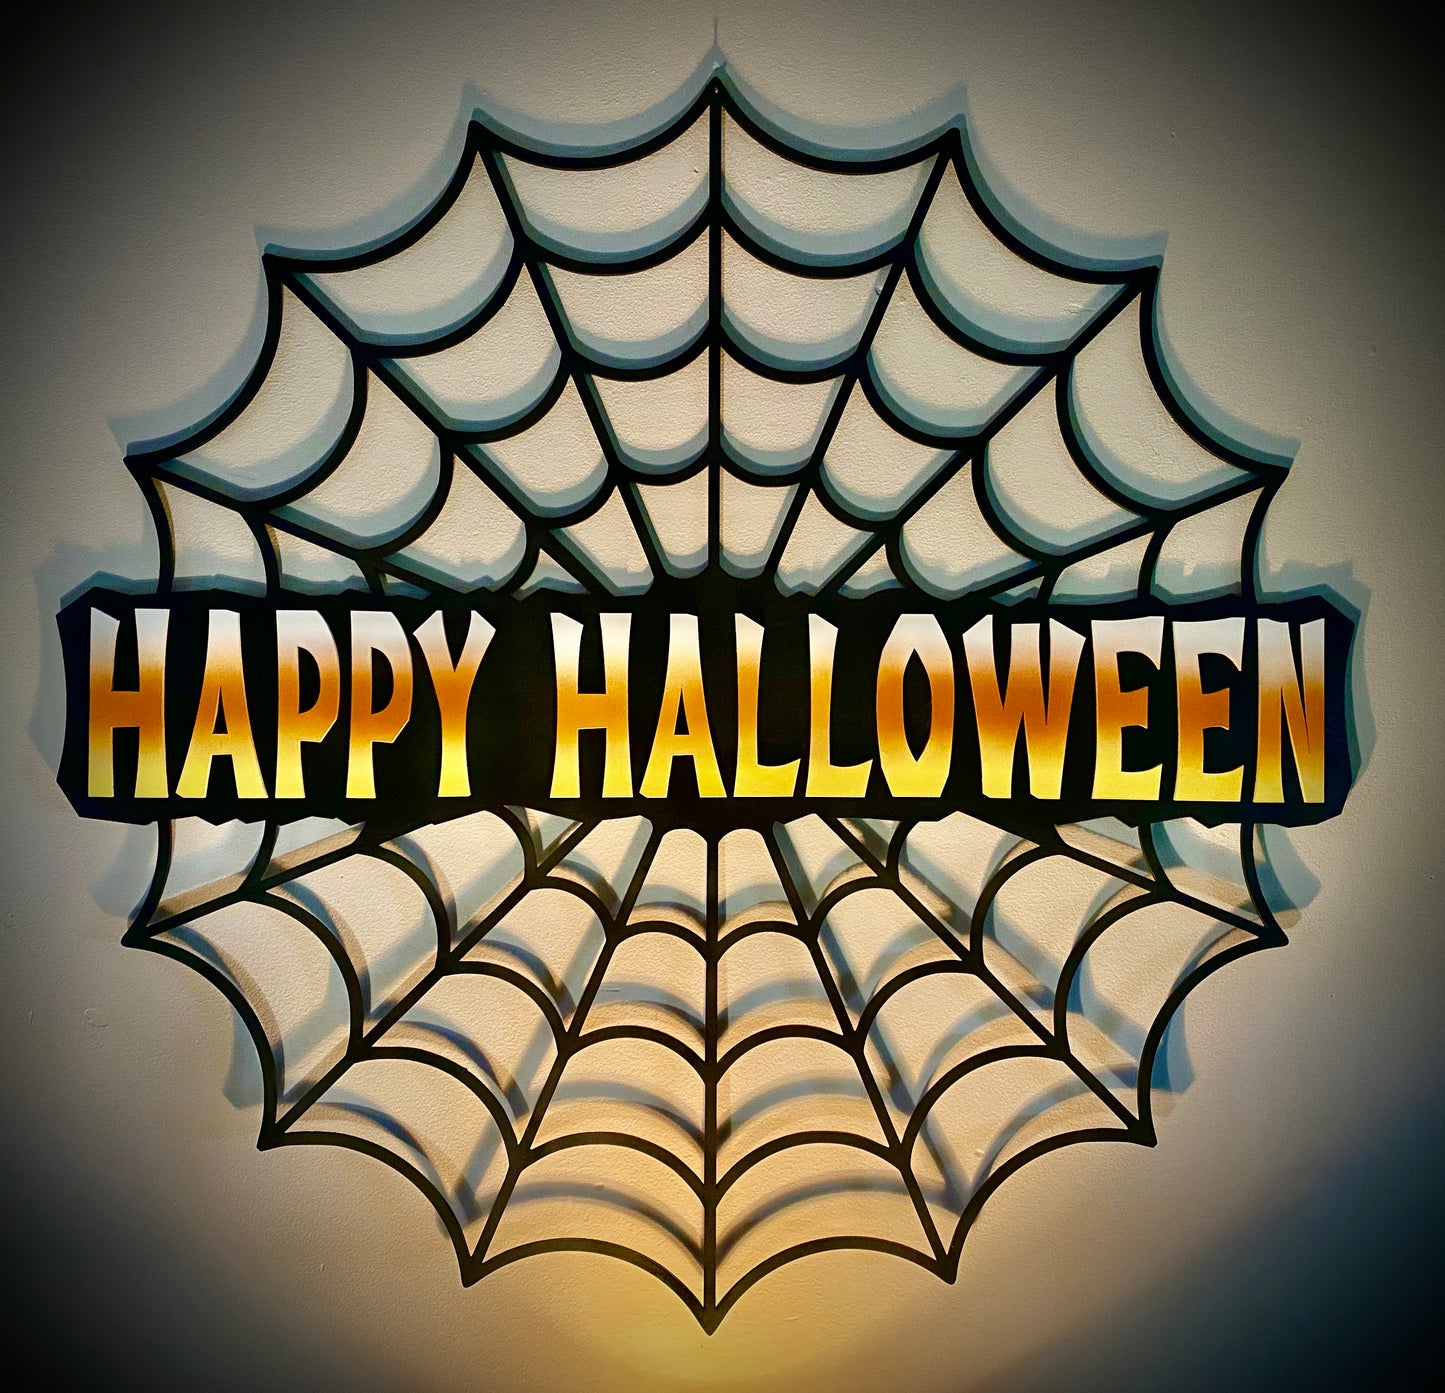 Happy Halloween Spiderweb Decoration